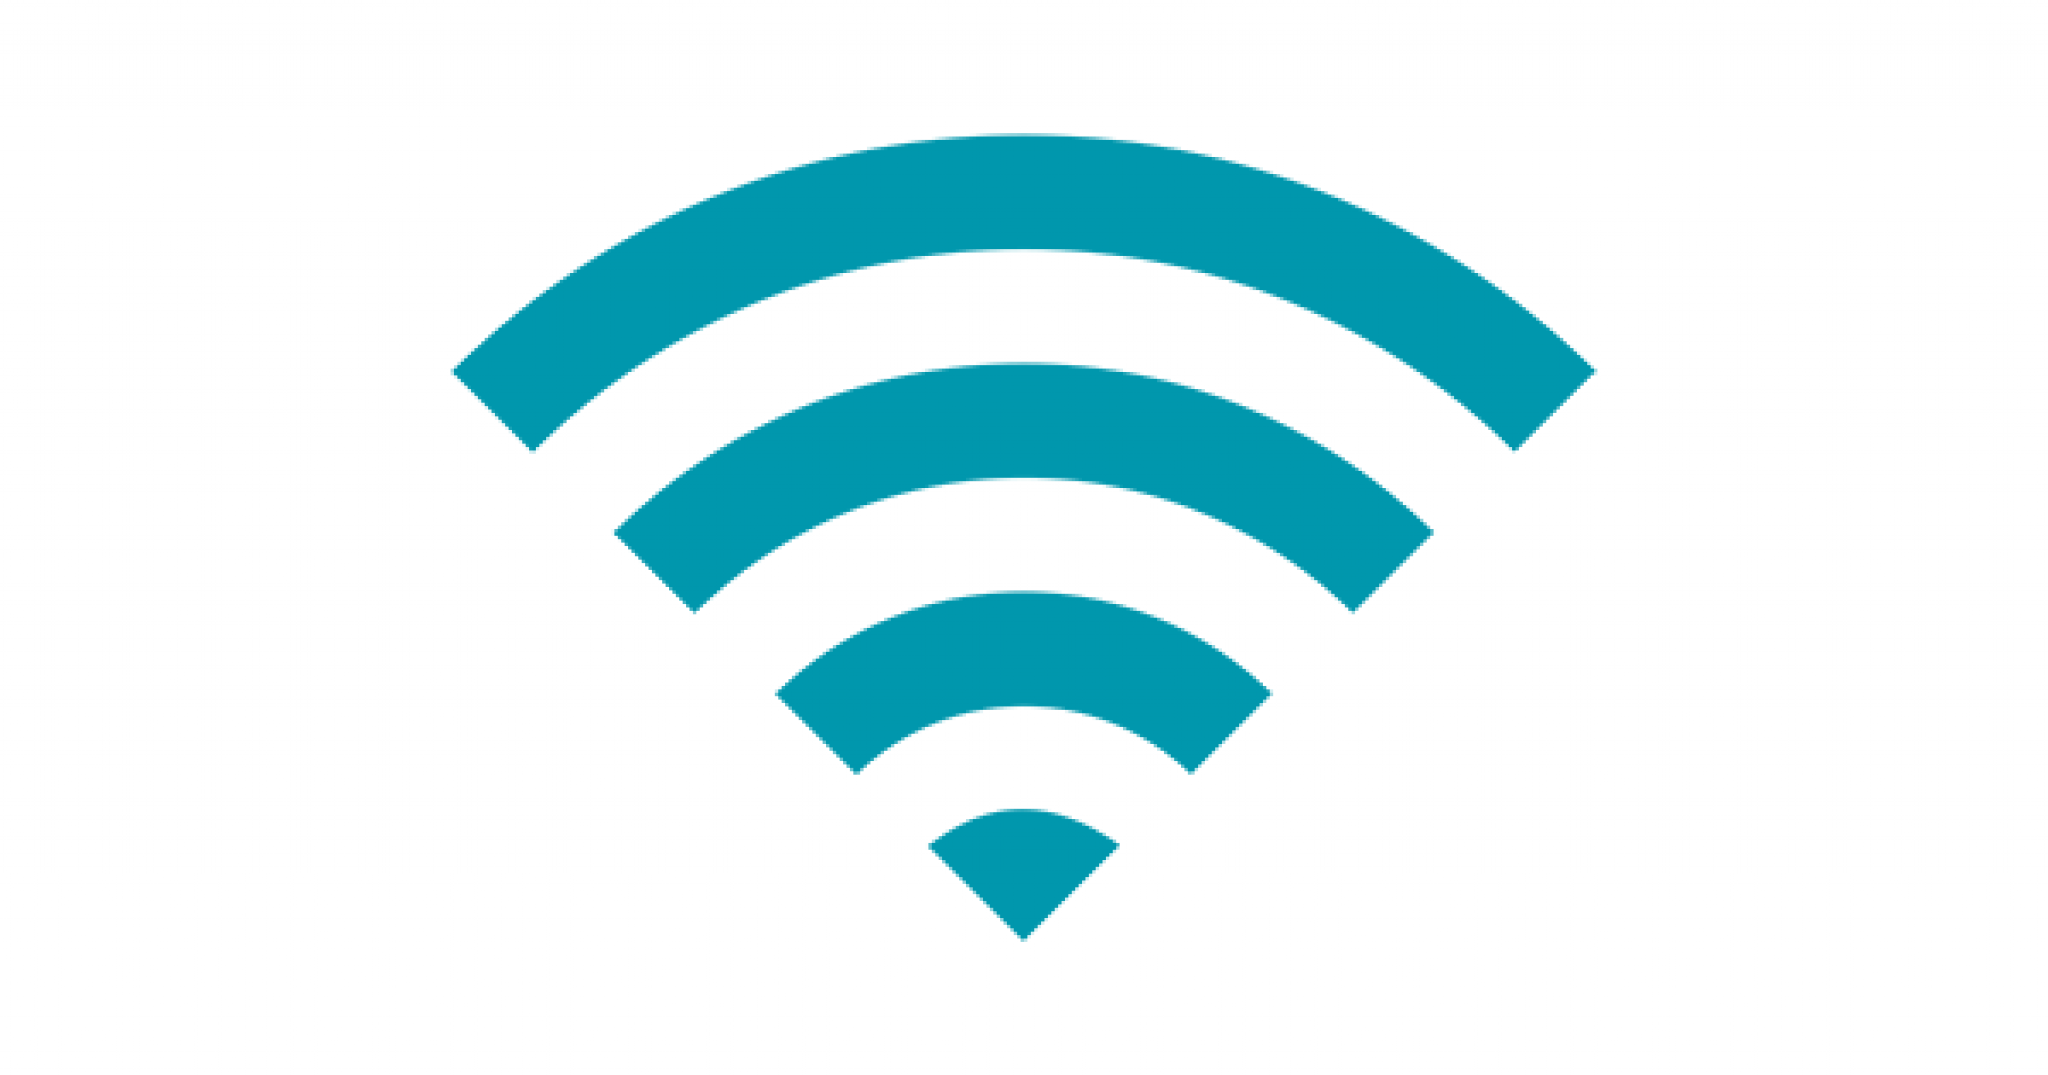 Балу вай фай. Значок вайфая. Иконка WIFI. Wi-Fi логотип. Значок вай фай на прозрачном фоне.